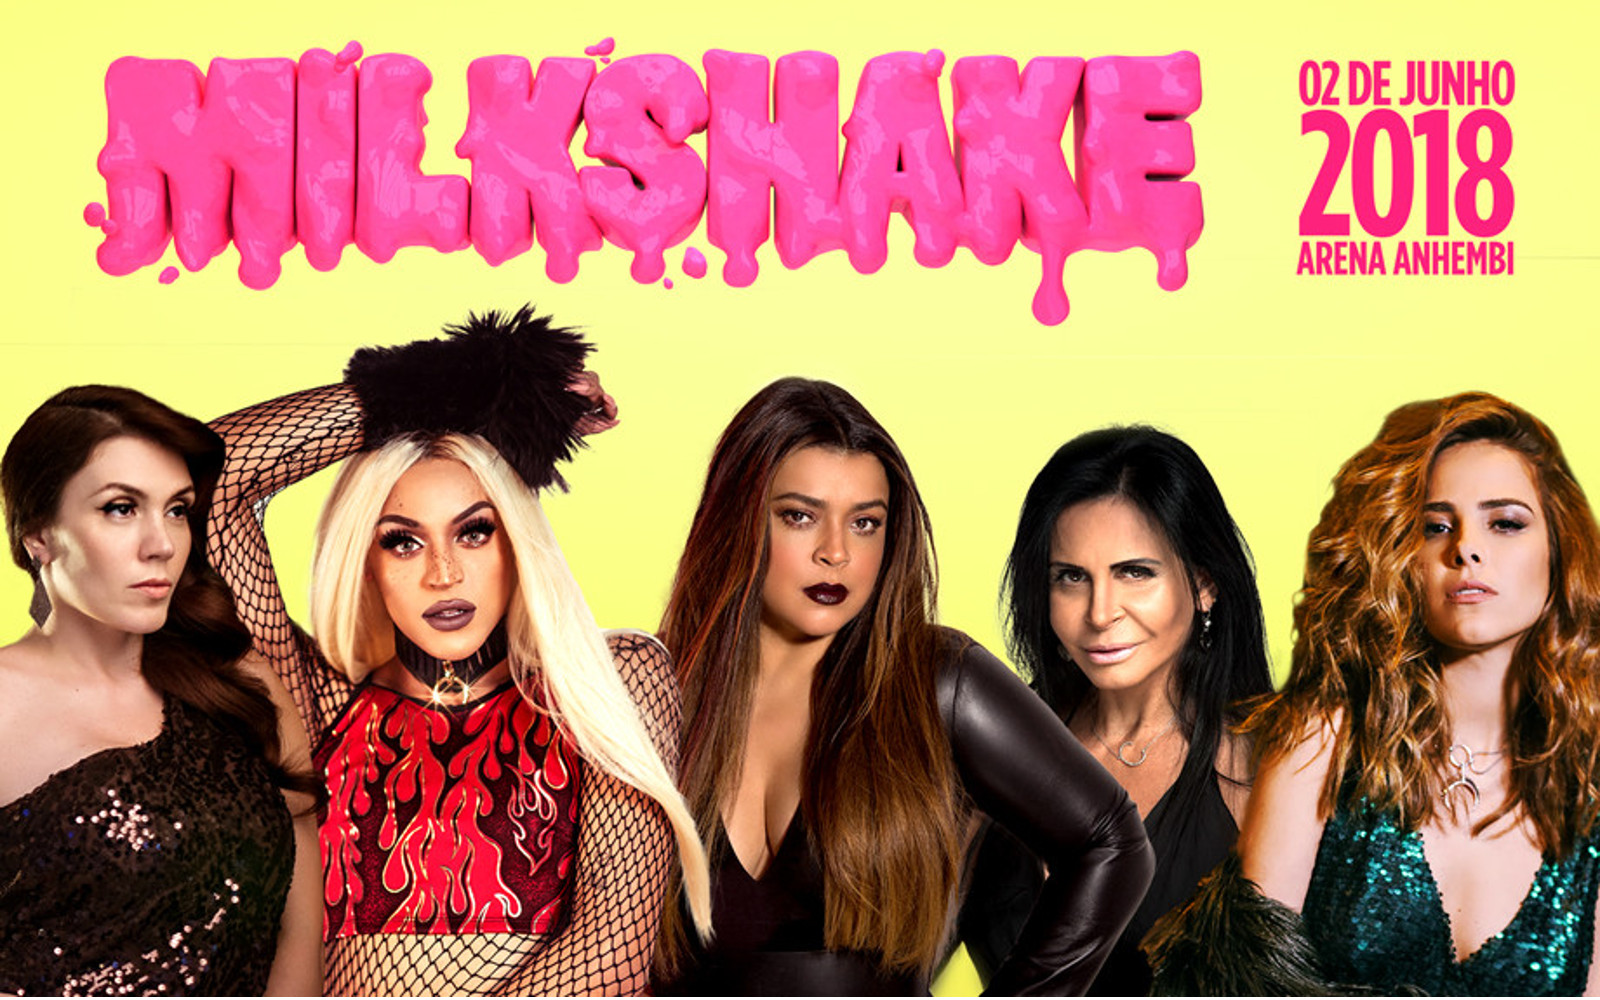 Com mais de 30 atrações, Milkshake Festival 2018 segue com força para sua segunda edição no Brasil